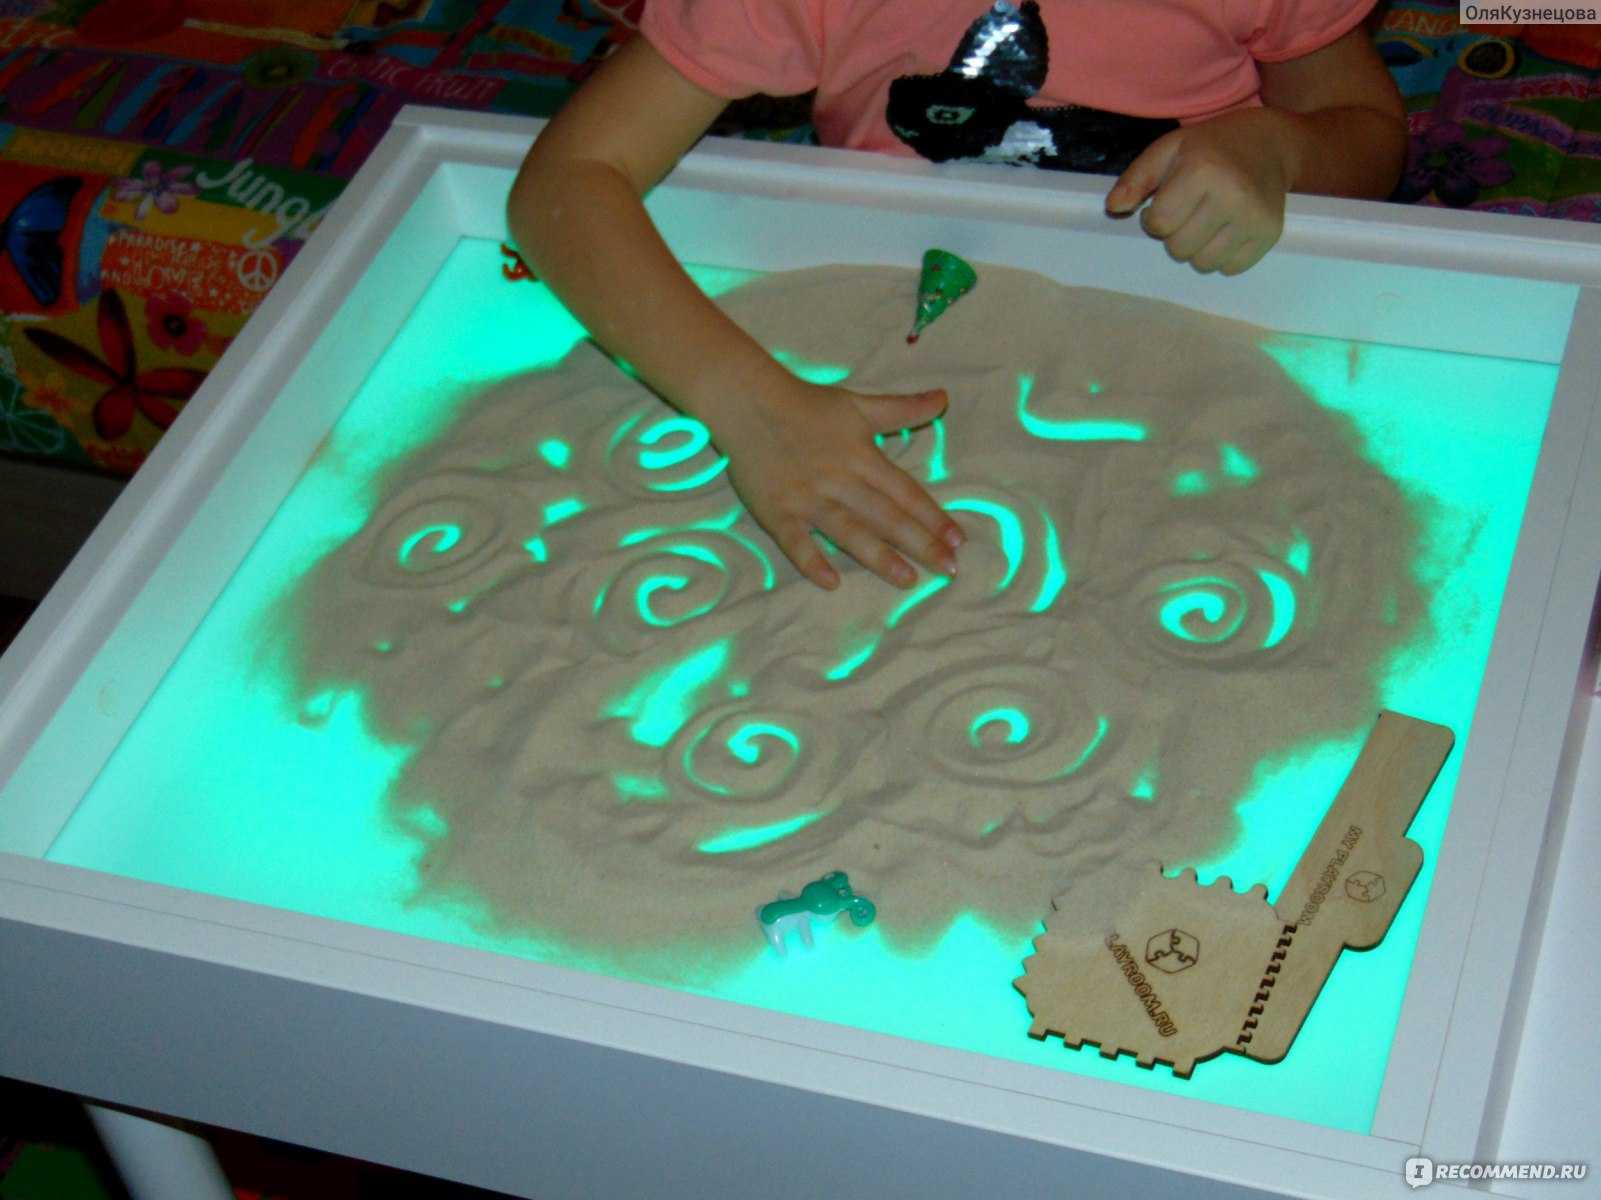 Световые песочницы myplayroom: детские столы-песочницы 7 в 1 и другие модели для рисования песком, отзывы